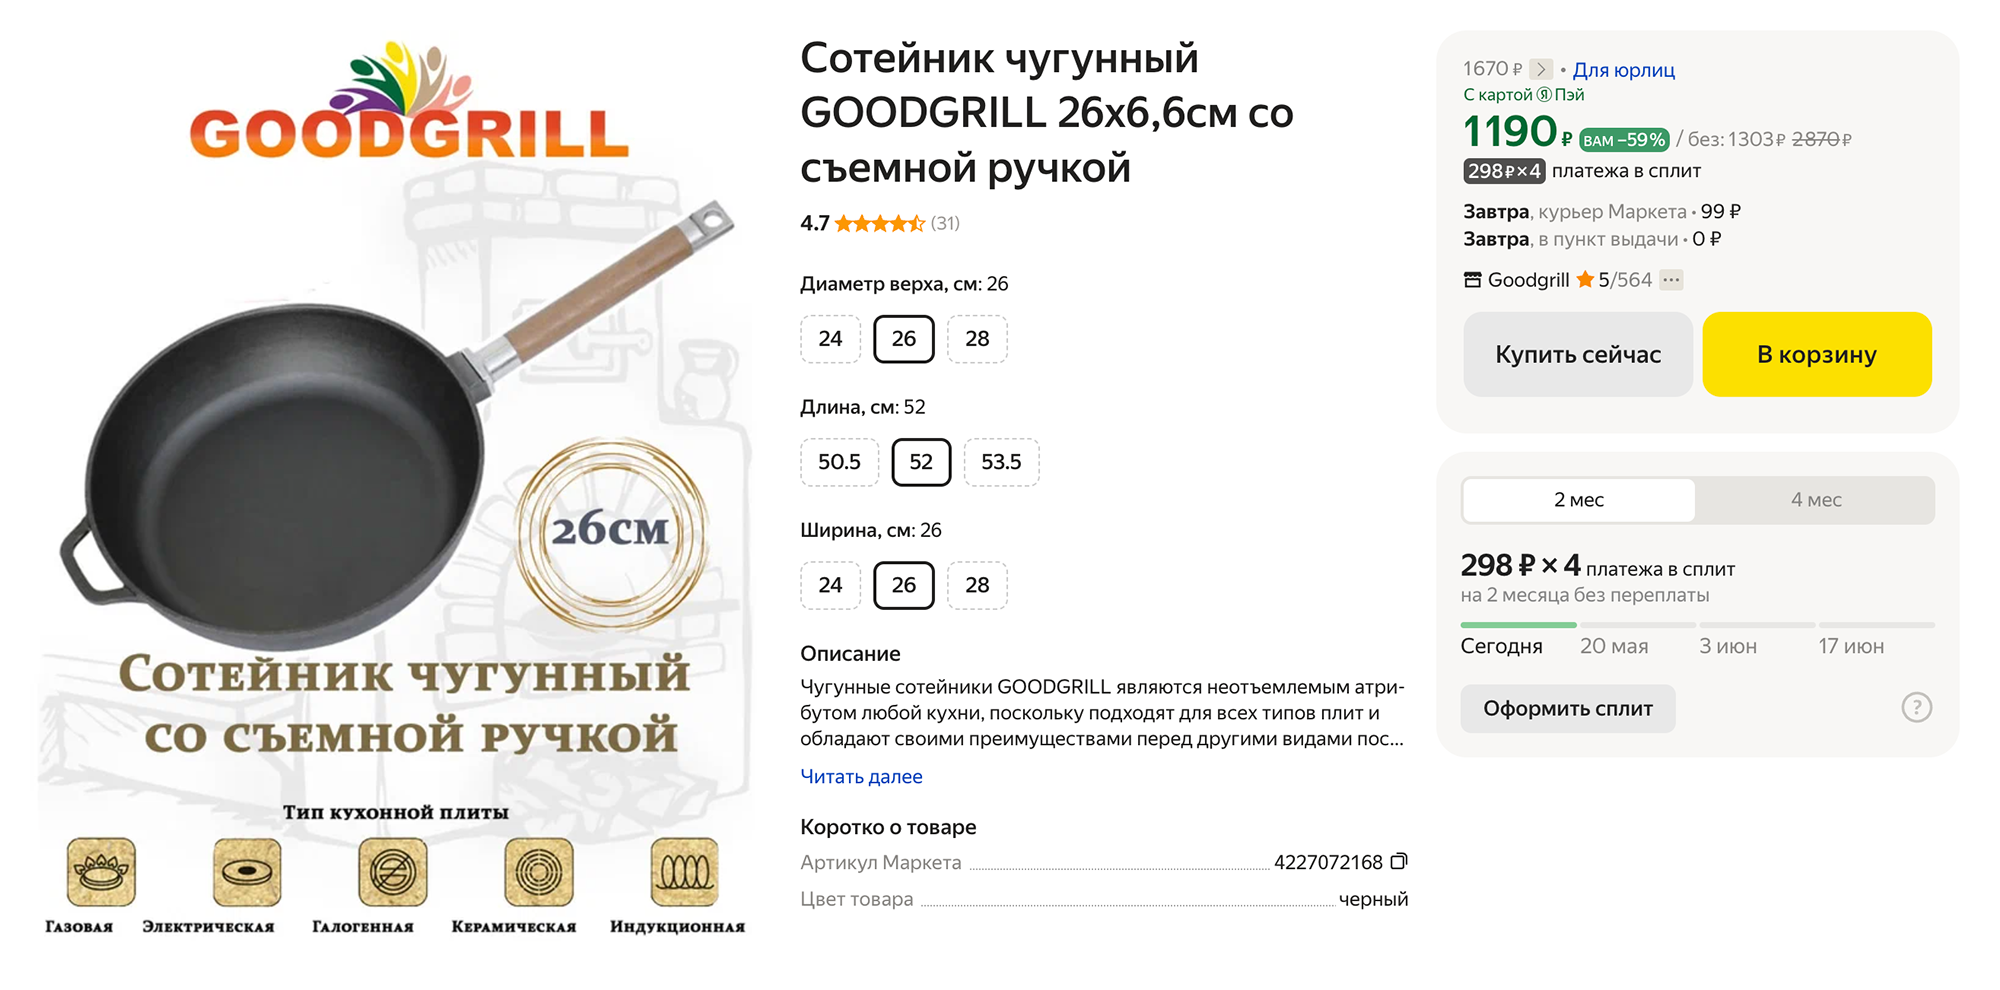 Чугунный сотейник диаметром 26 см со съемной ручкой стоит 1303 ₽. Источник: market.yandex.ru